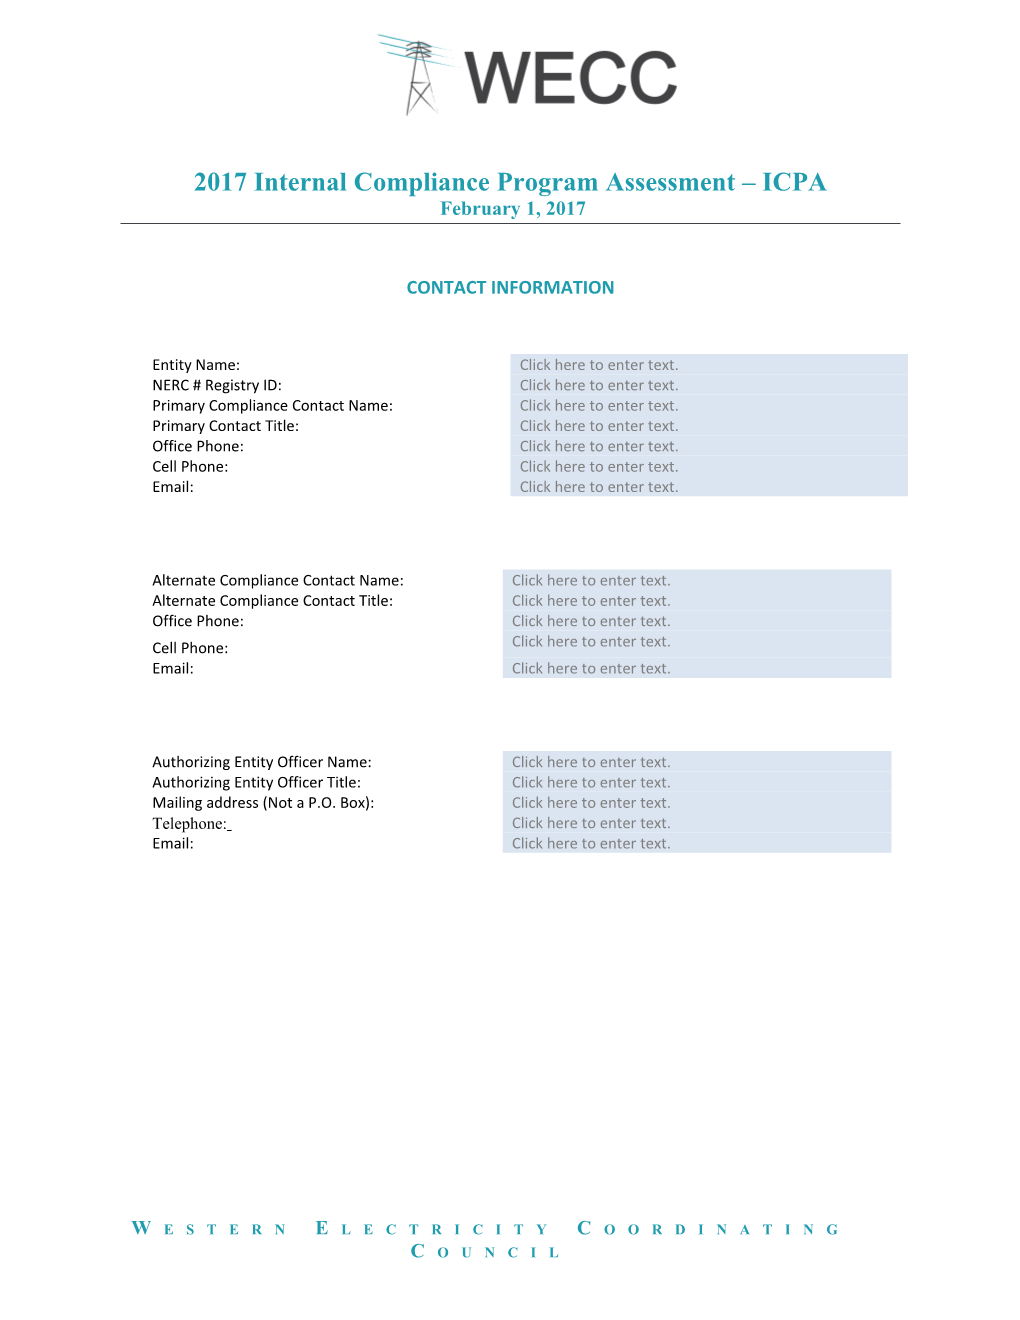 Internal Compliance Program Assessment